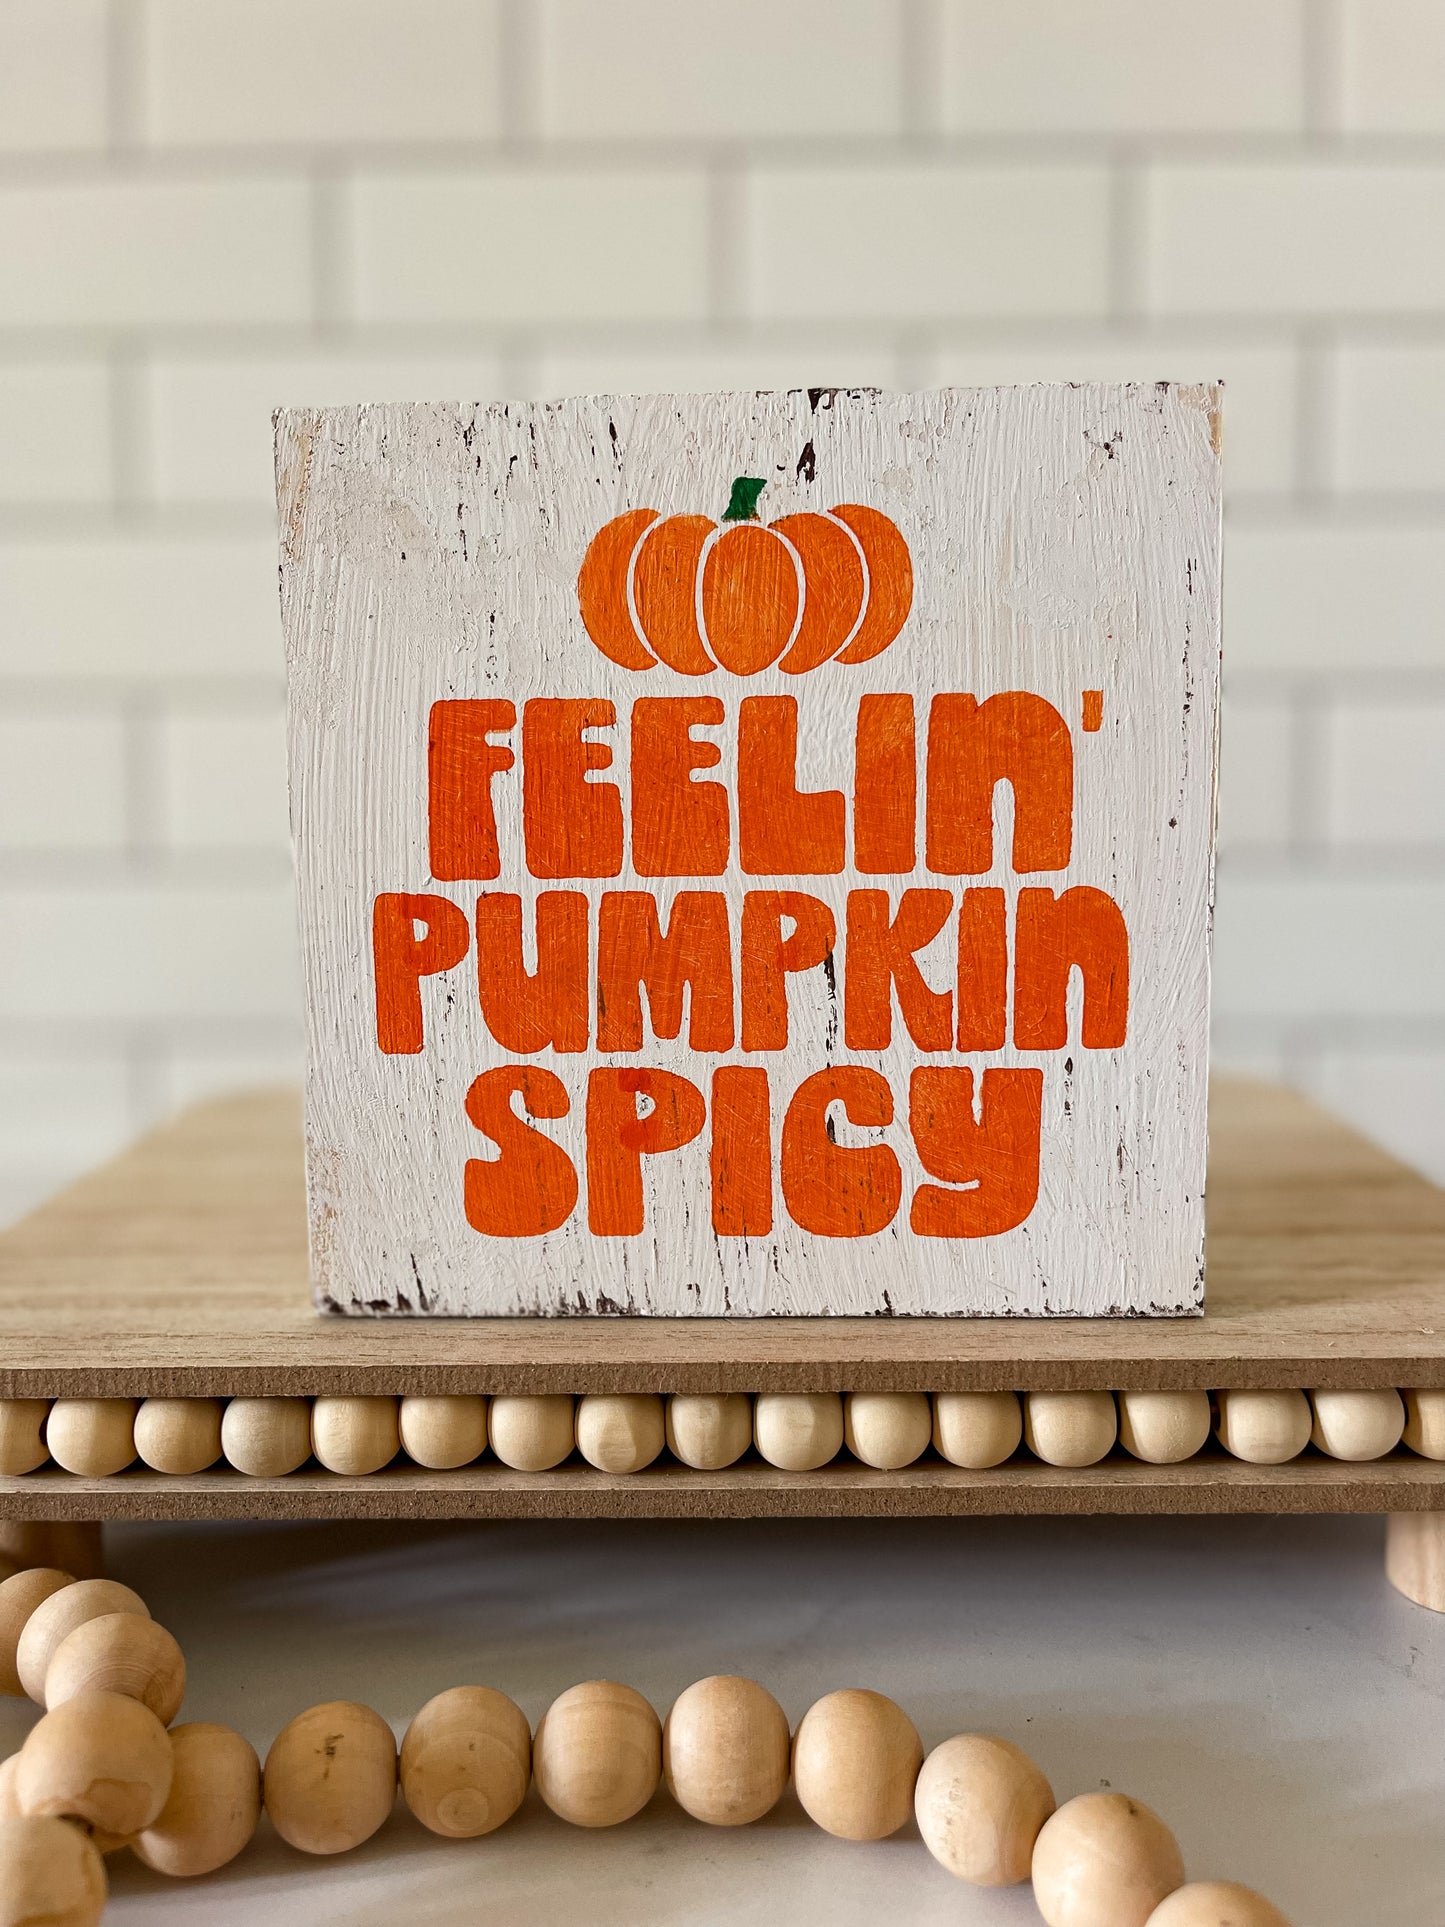 Feelin' Pumpkin Spicy Wood Sign